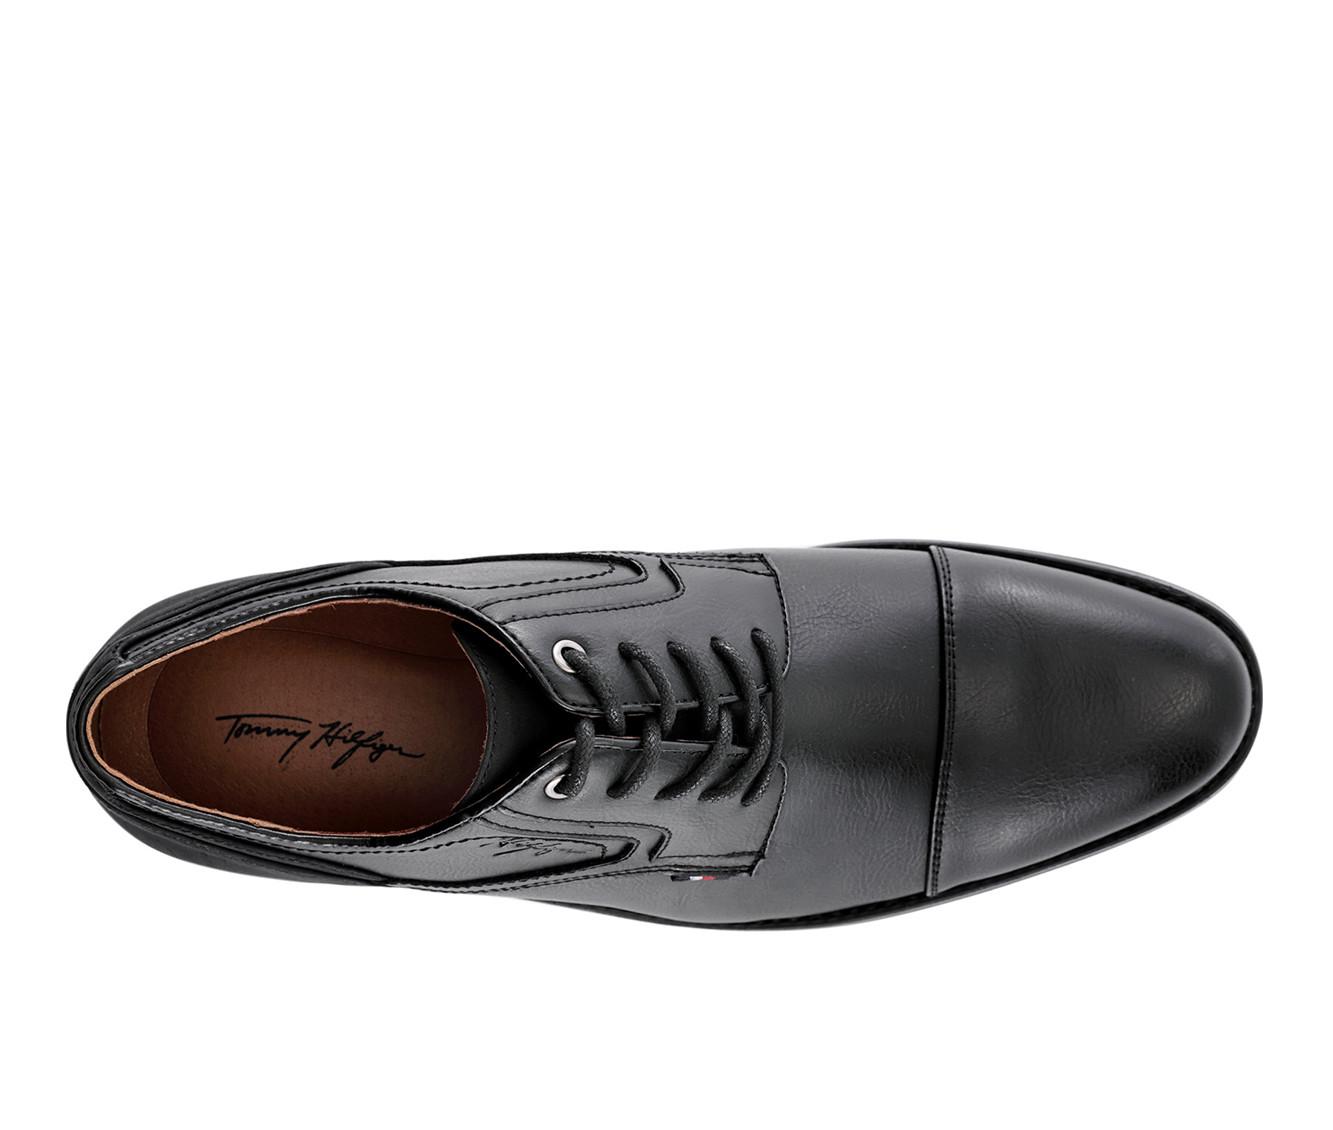 Men's Tommy Hilfiger Banly Leather Dress Shoes